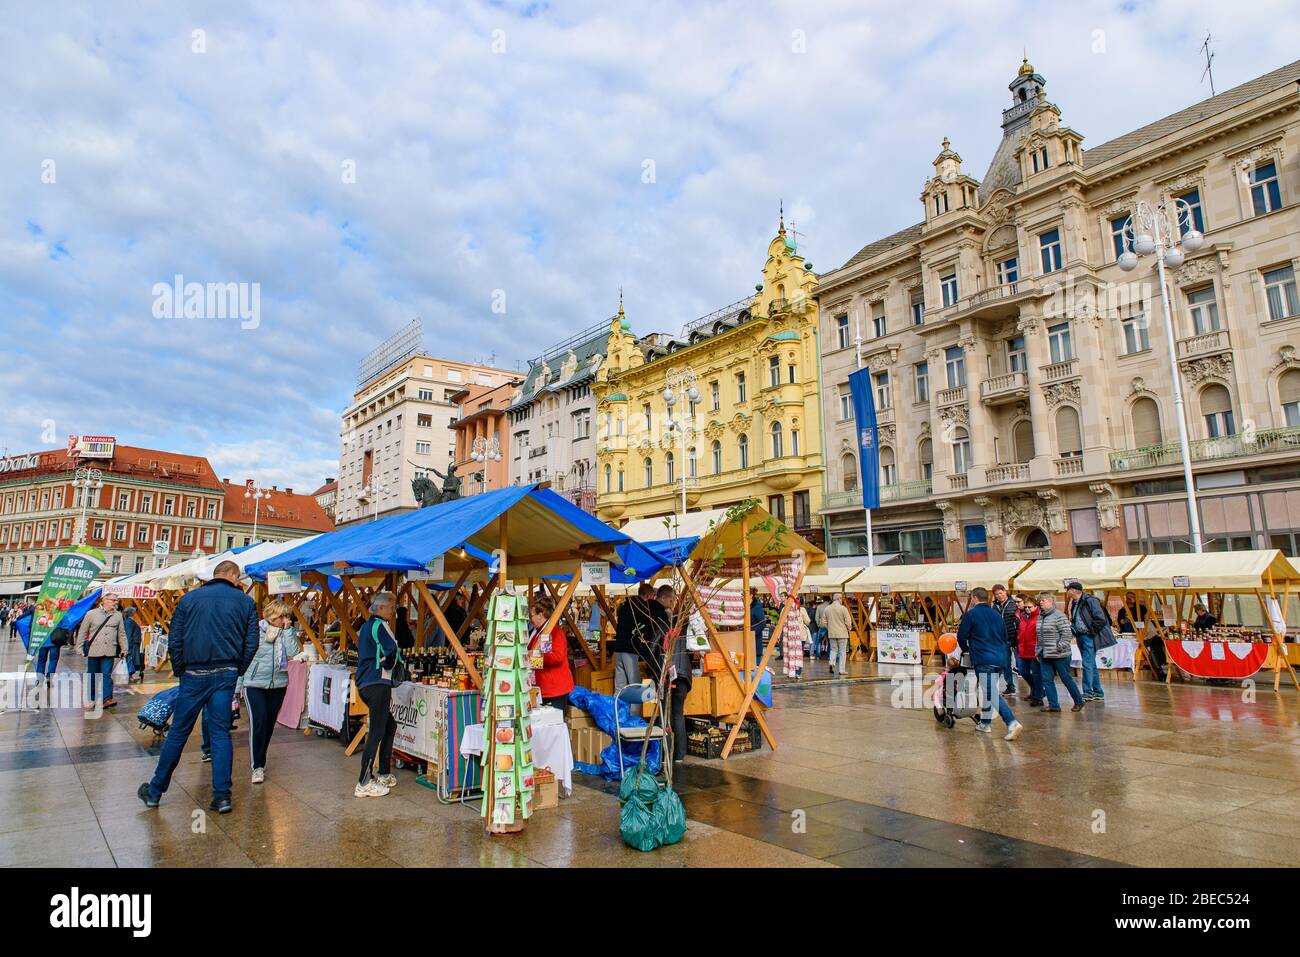 El mercado en la Plaza Ban Jelačić, la plaza central de la ciudad de Zagreb, Croacia Foto de stock